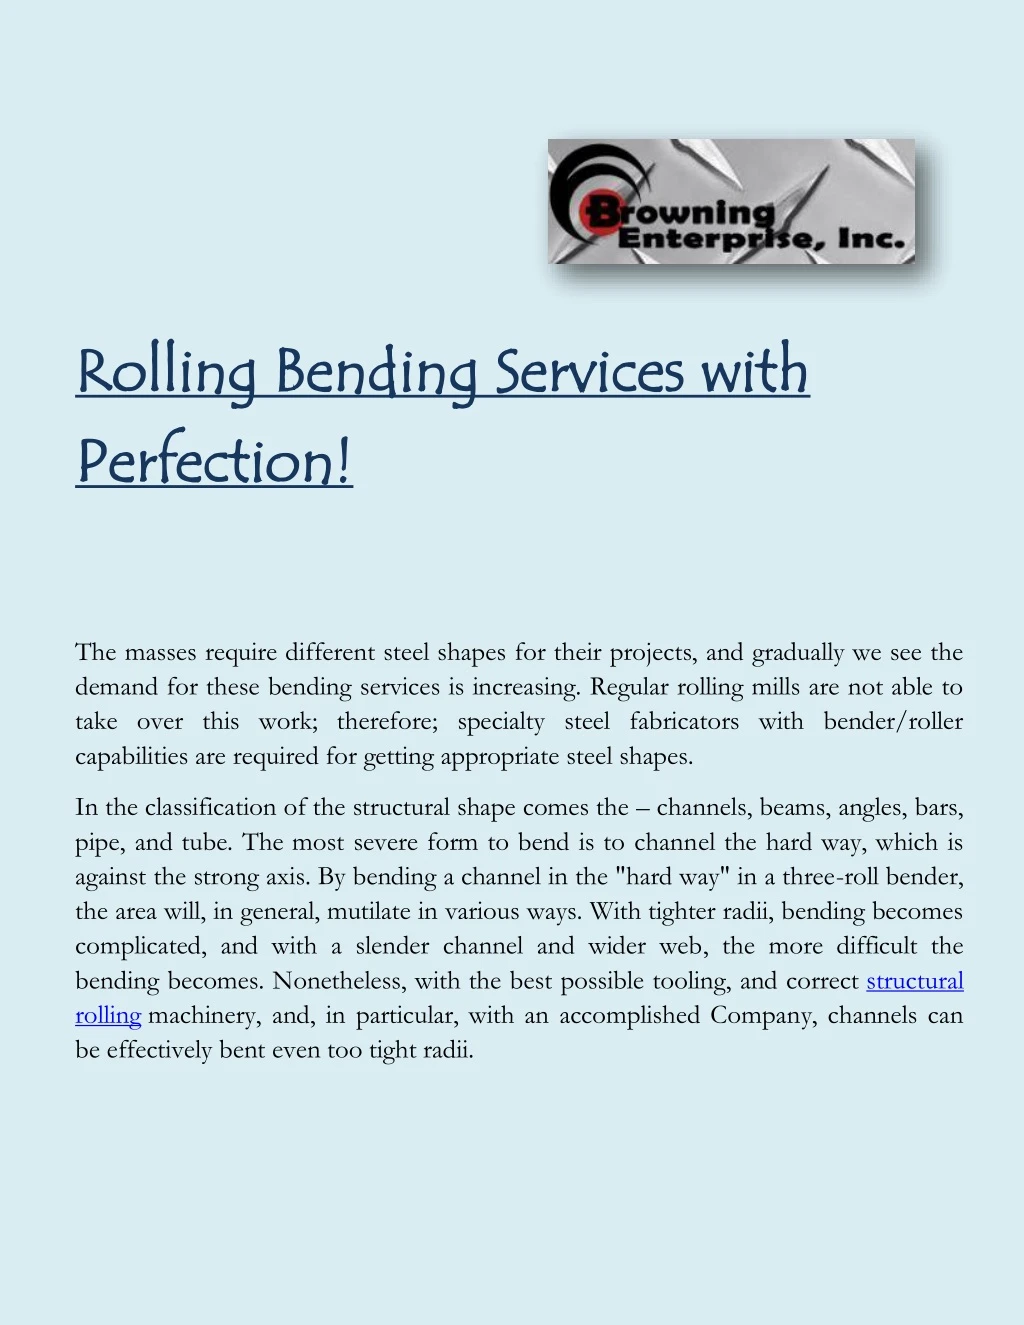 rolling bending services rolling bending services